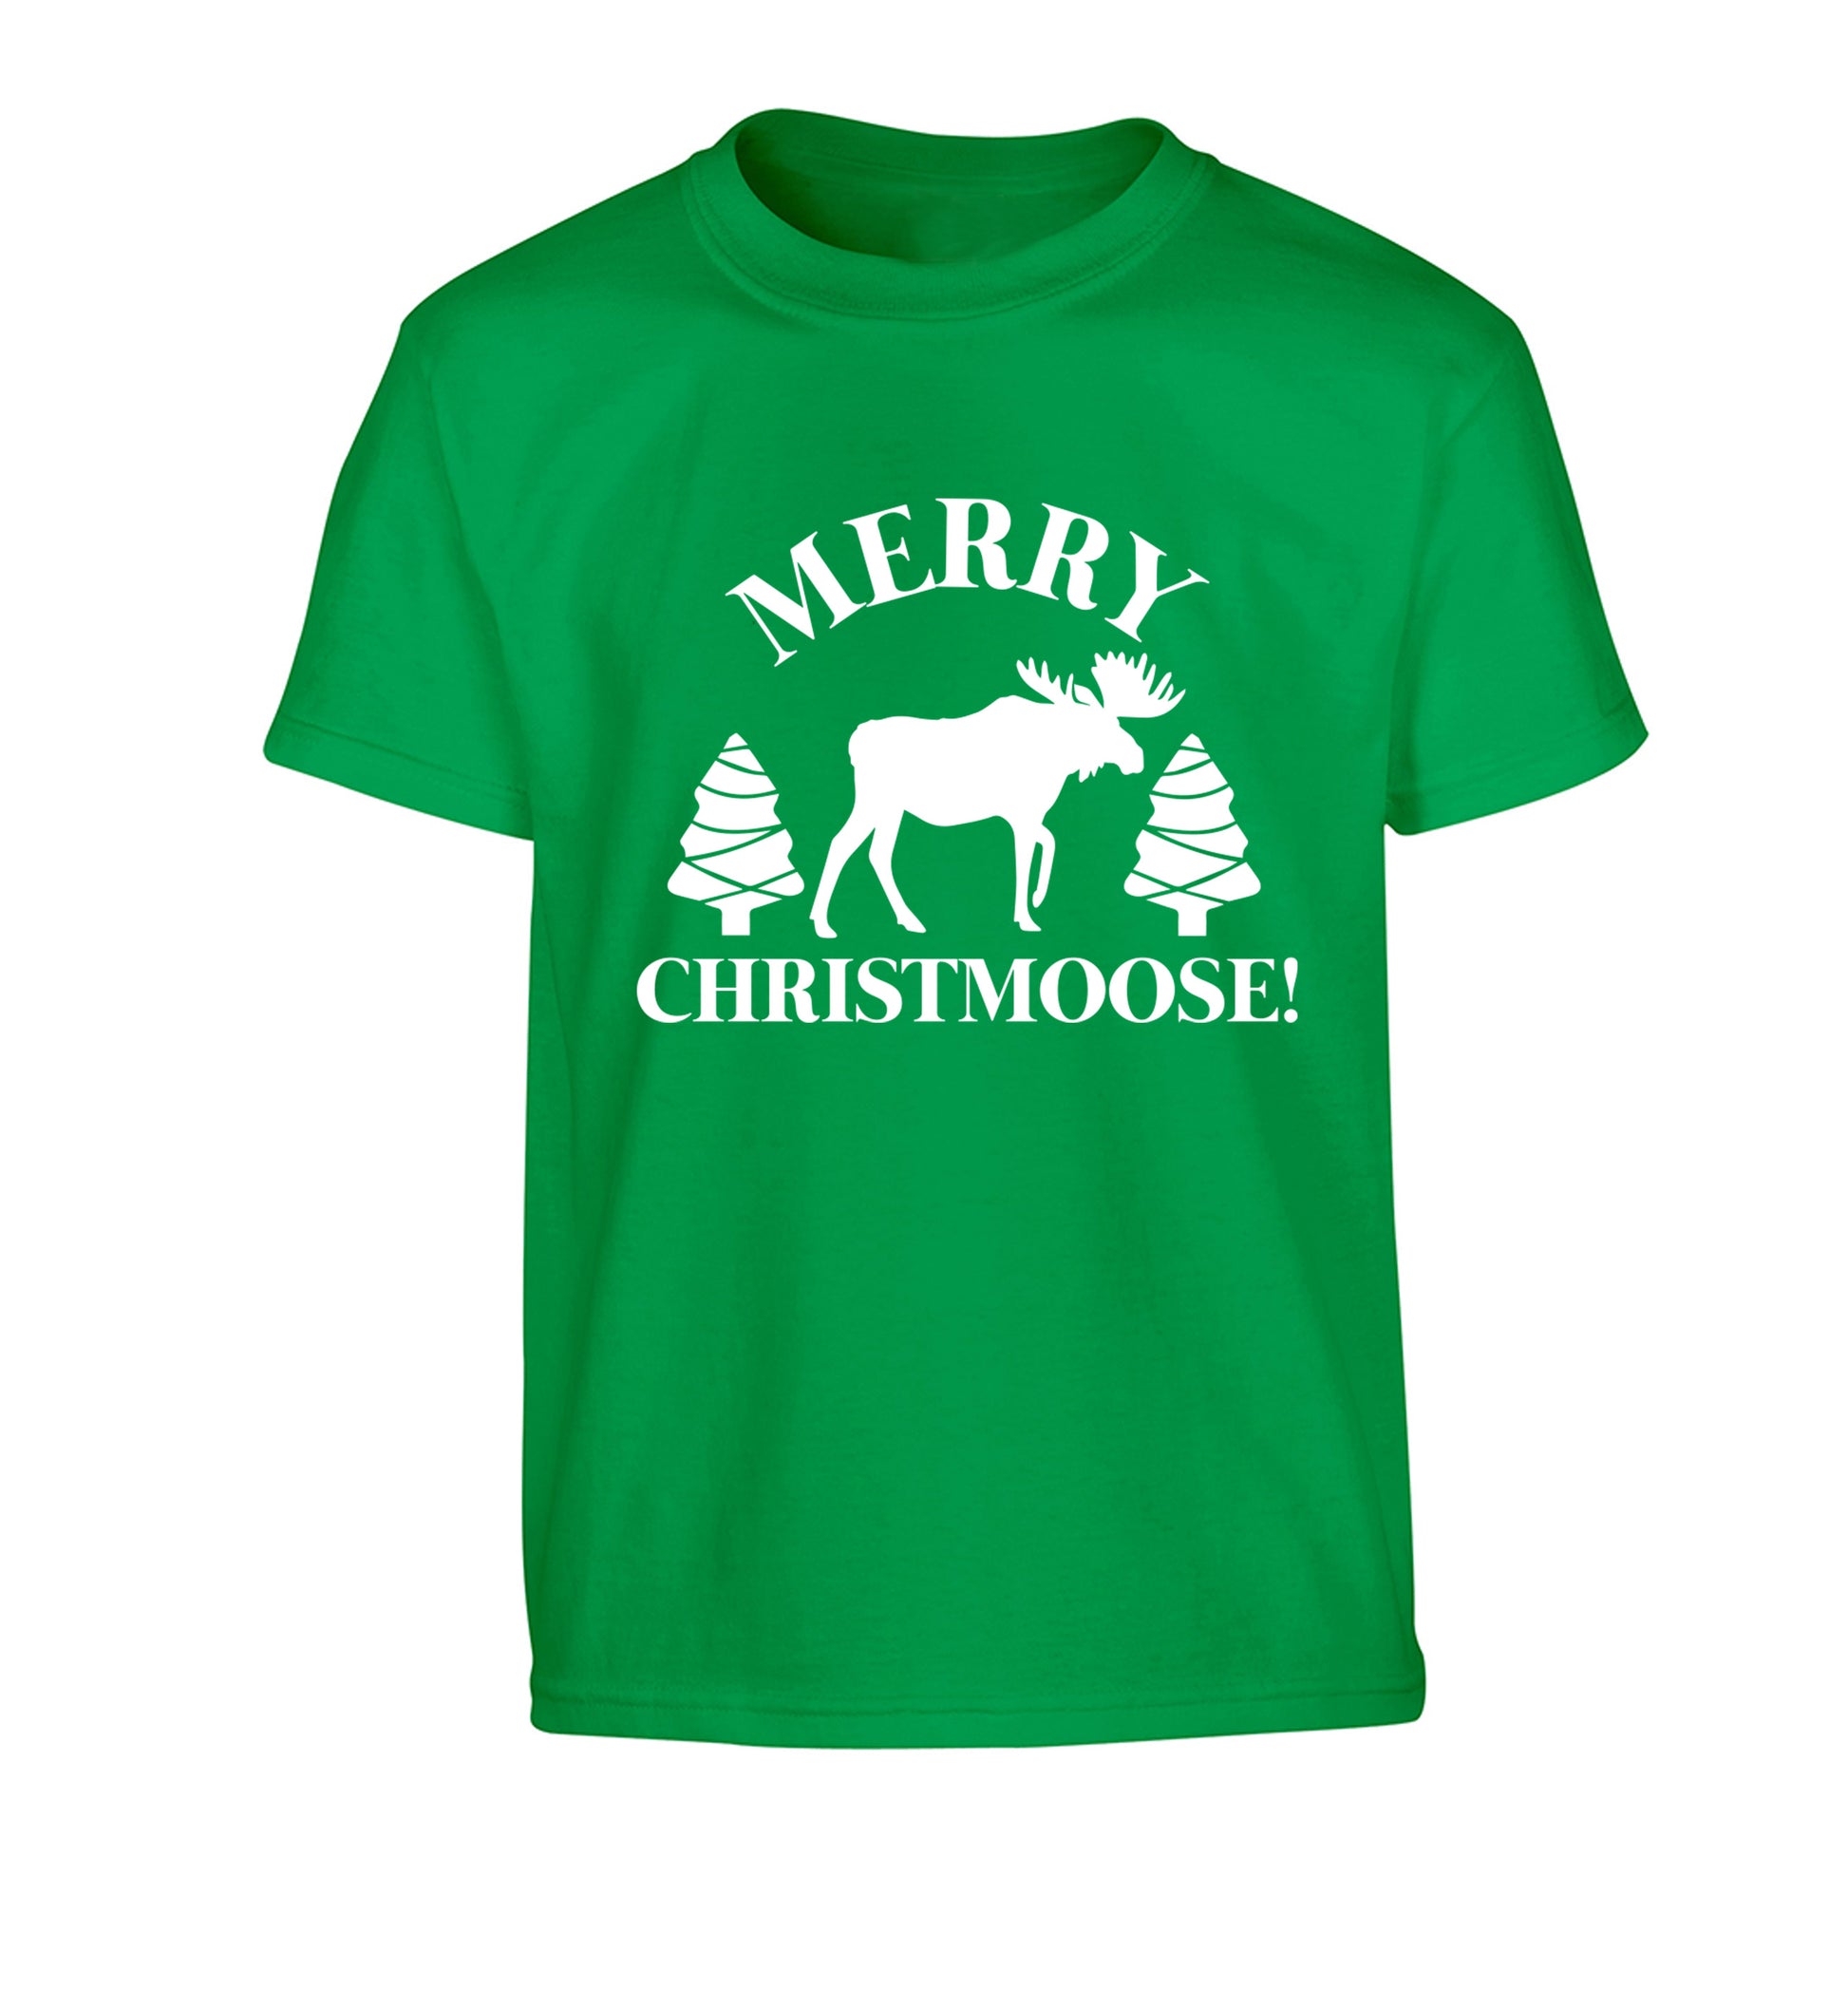 Merry Christmoose Children's green Tshirt 12-14 Years